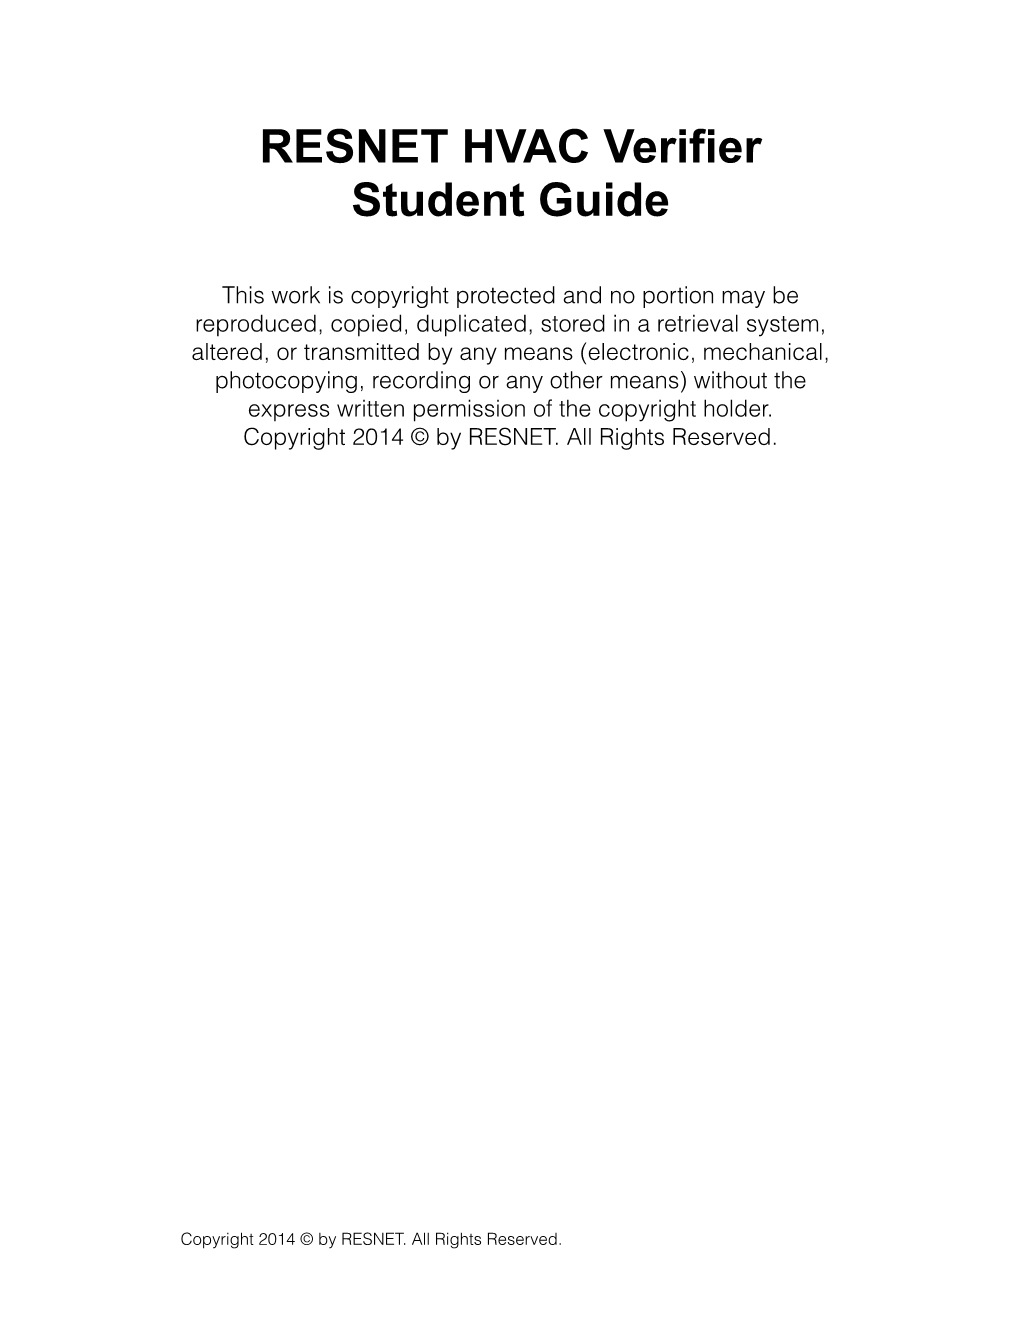 RESNET HVAC Verifier Student Guide